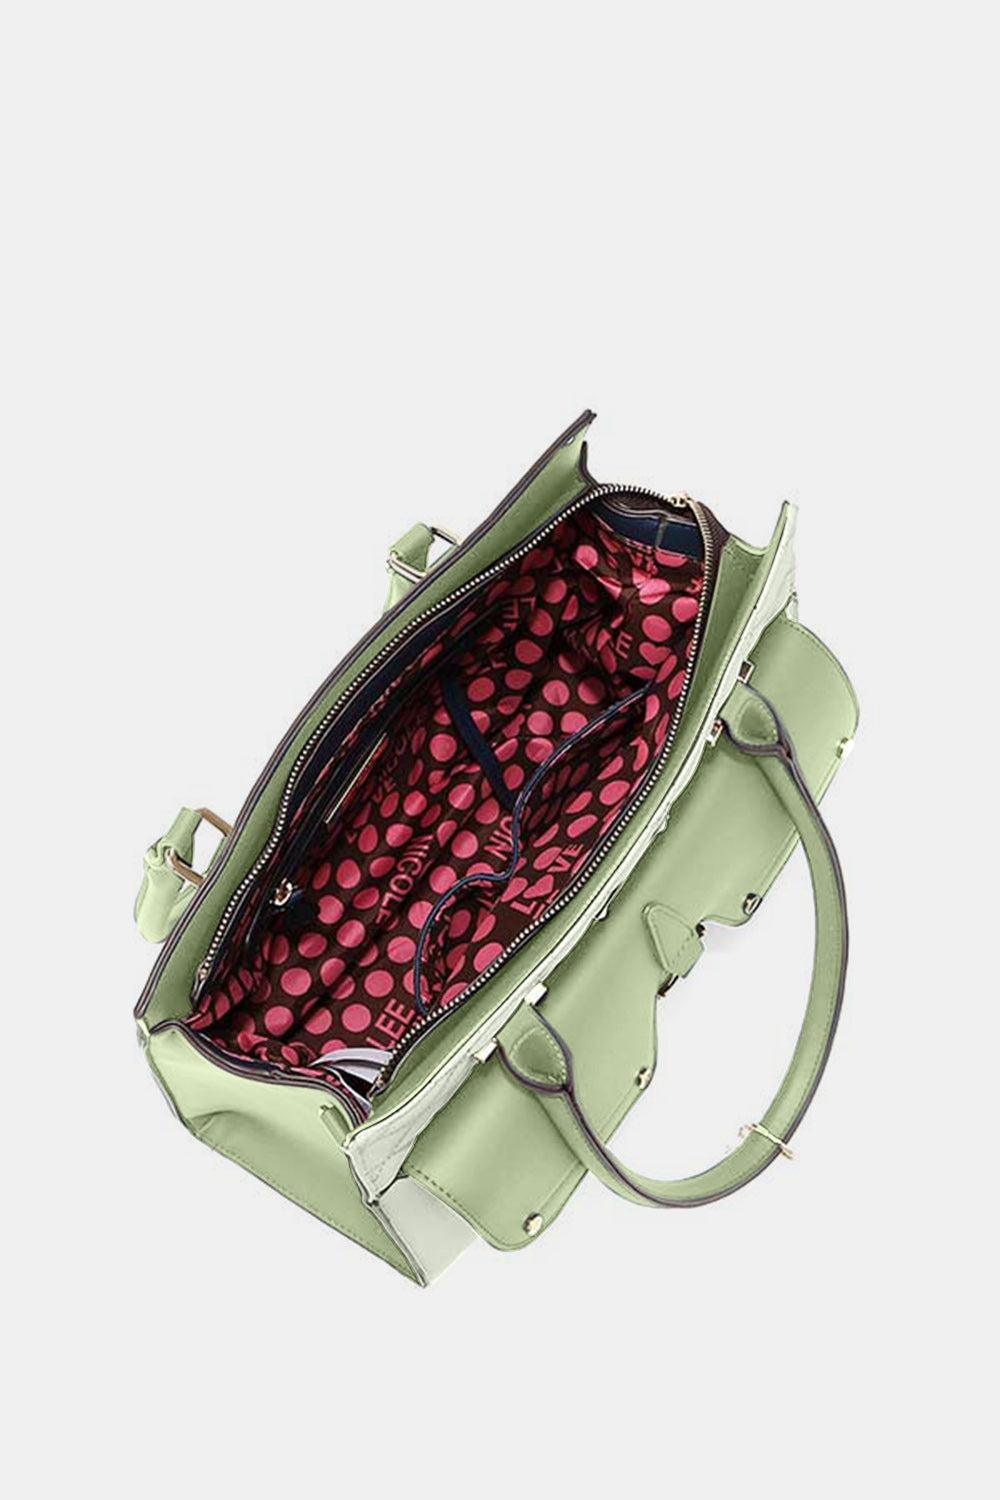 a green handbag with a pink polka dot pattern